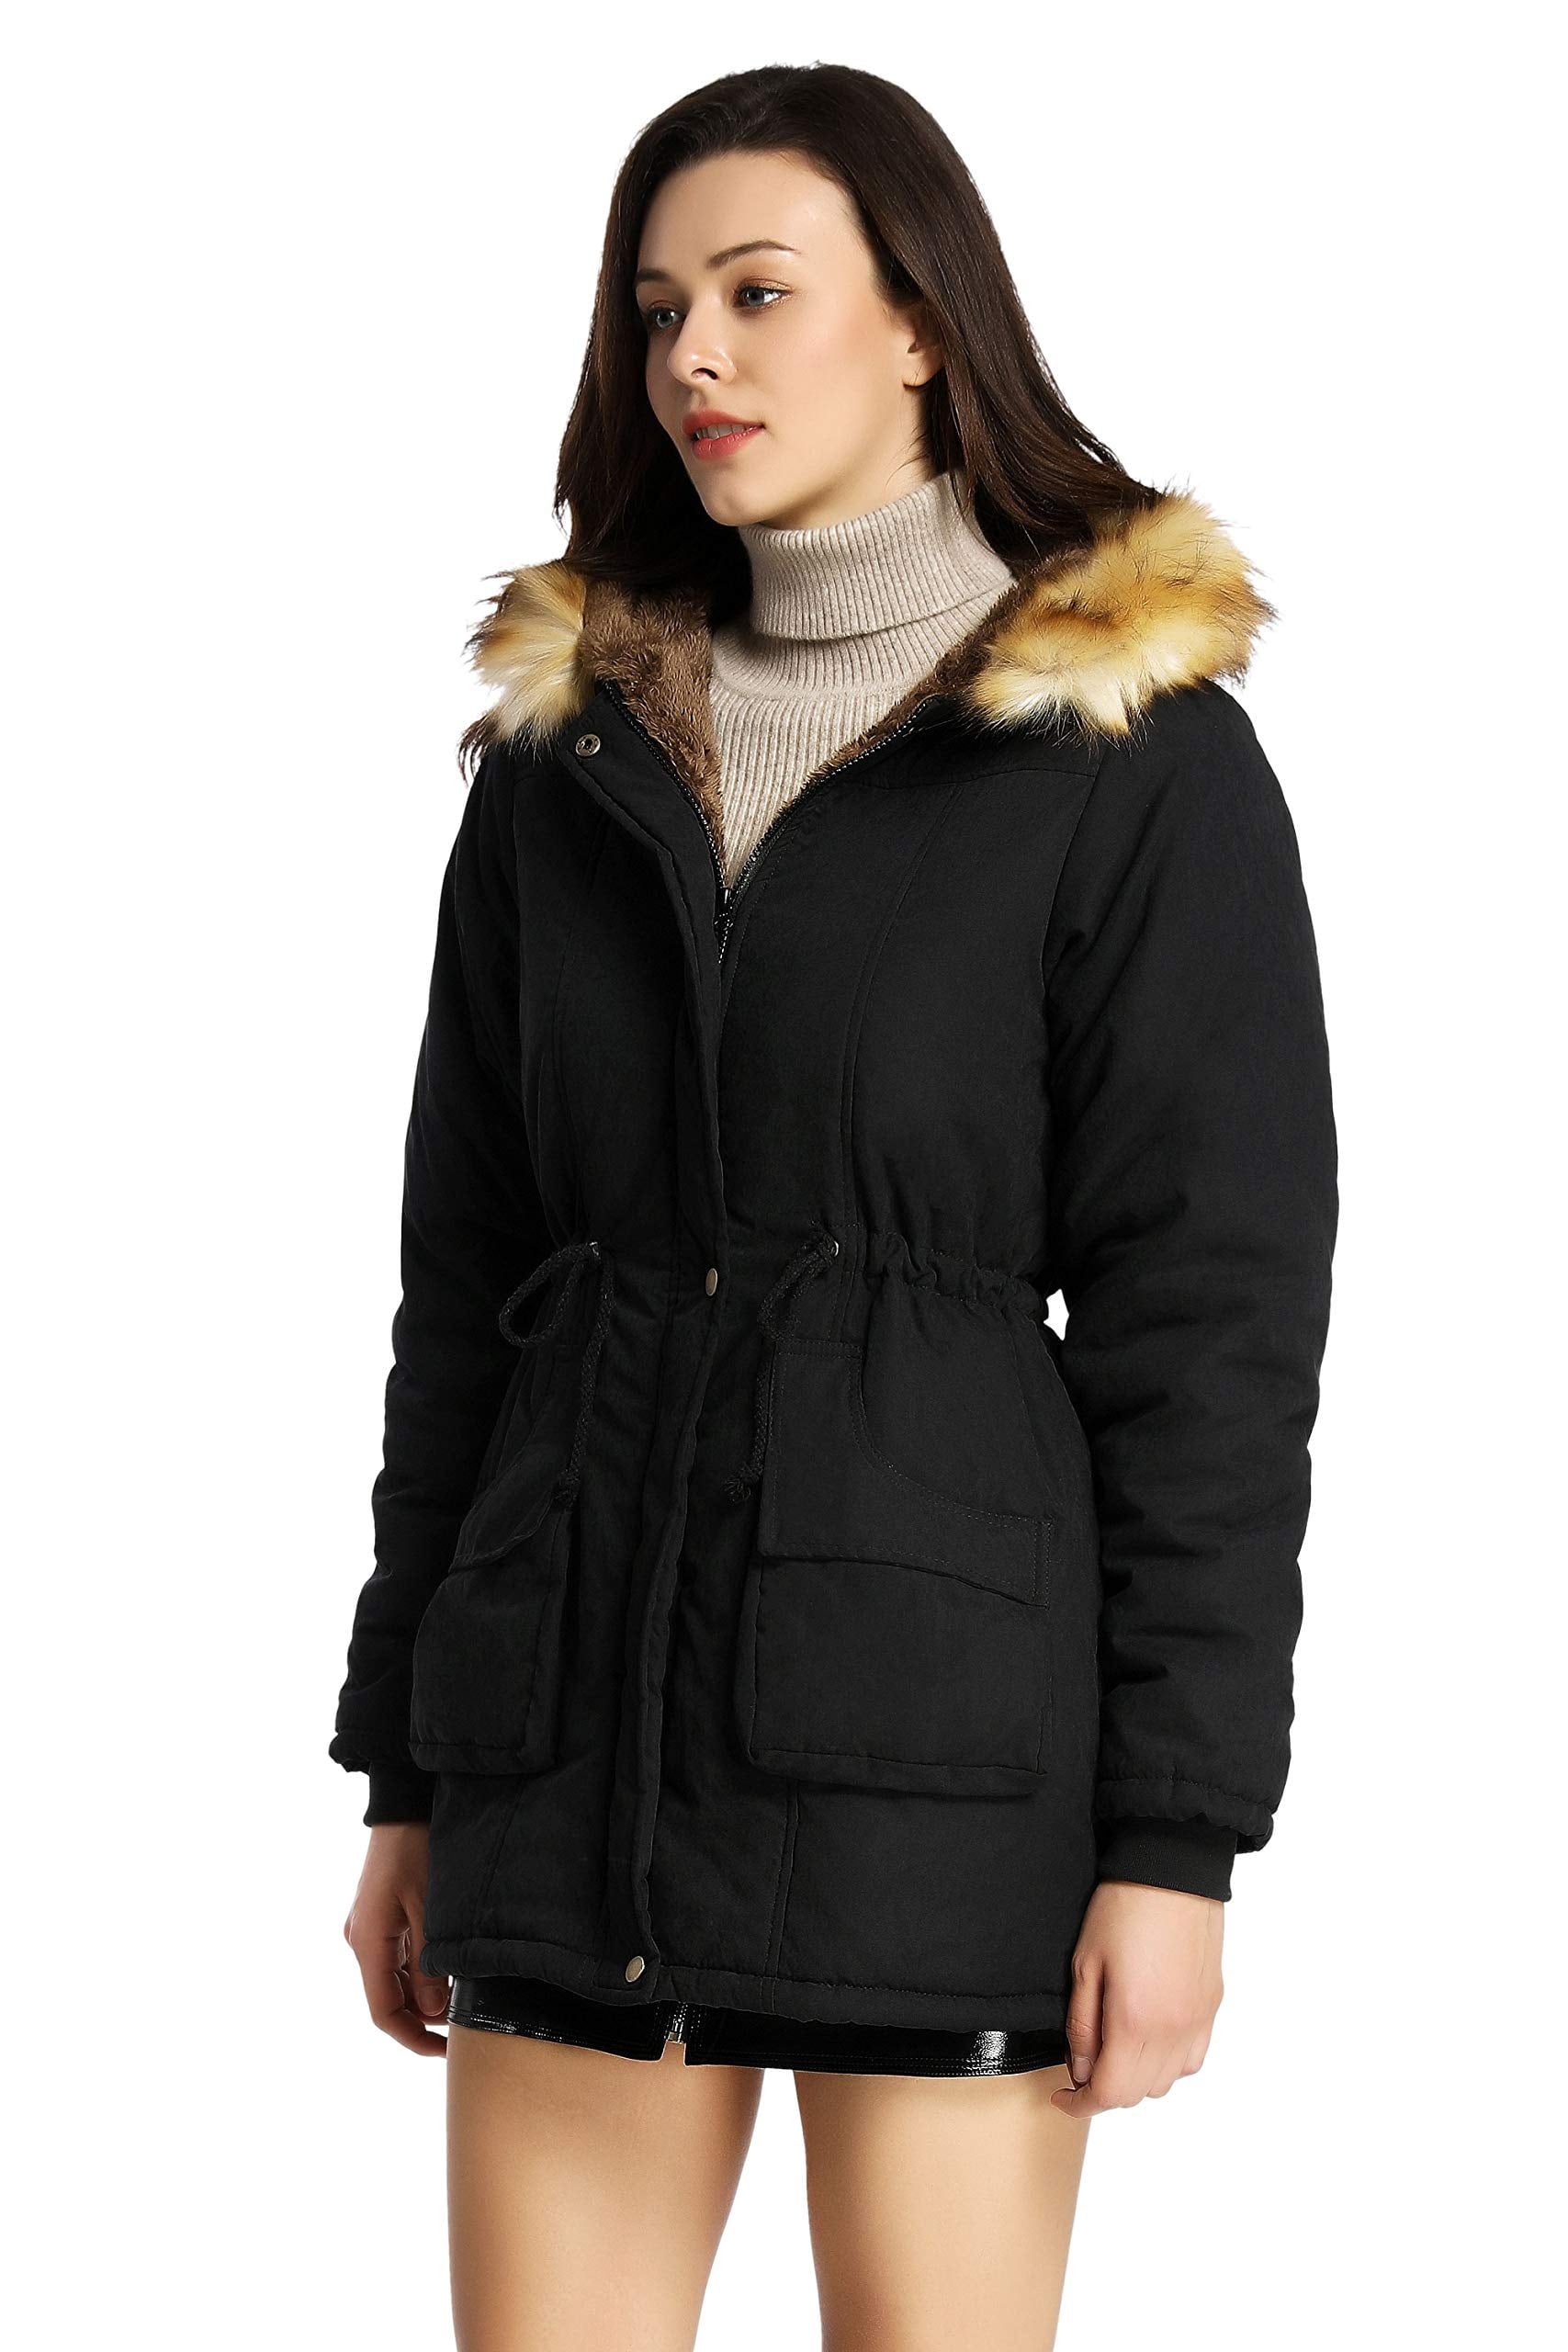 iLoveSIA Mens Winter Warm Jacket Fuzzy Lining Hooded Jacket Windbreaker 